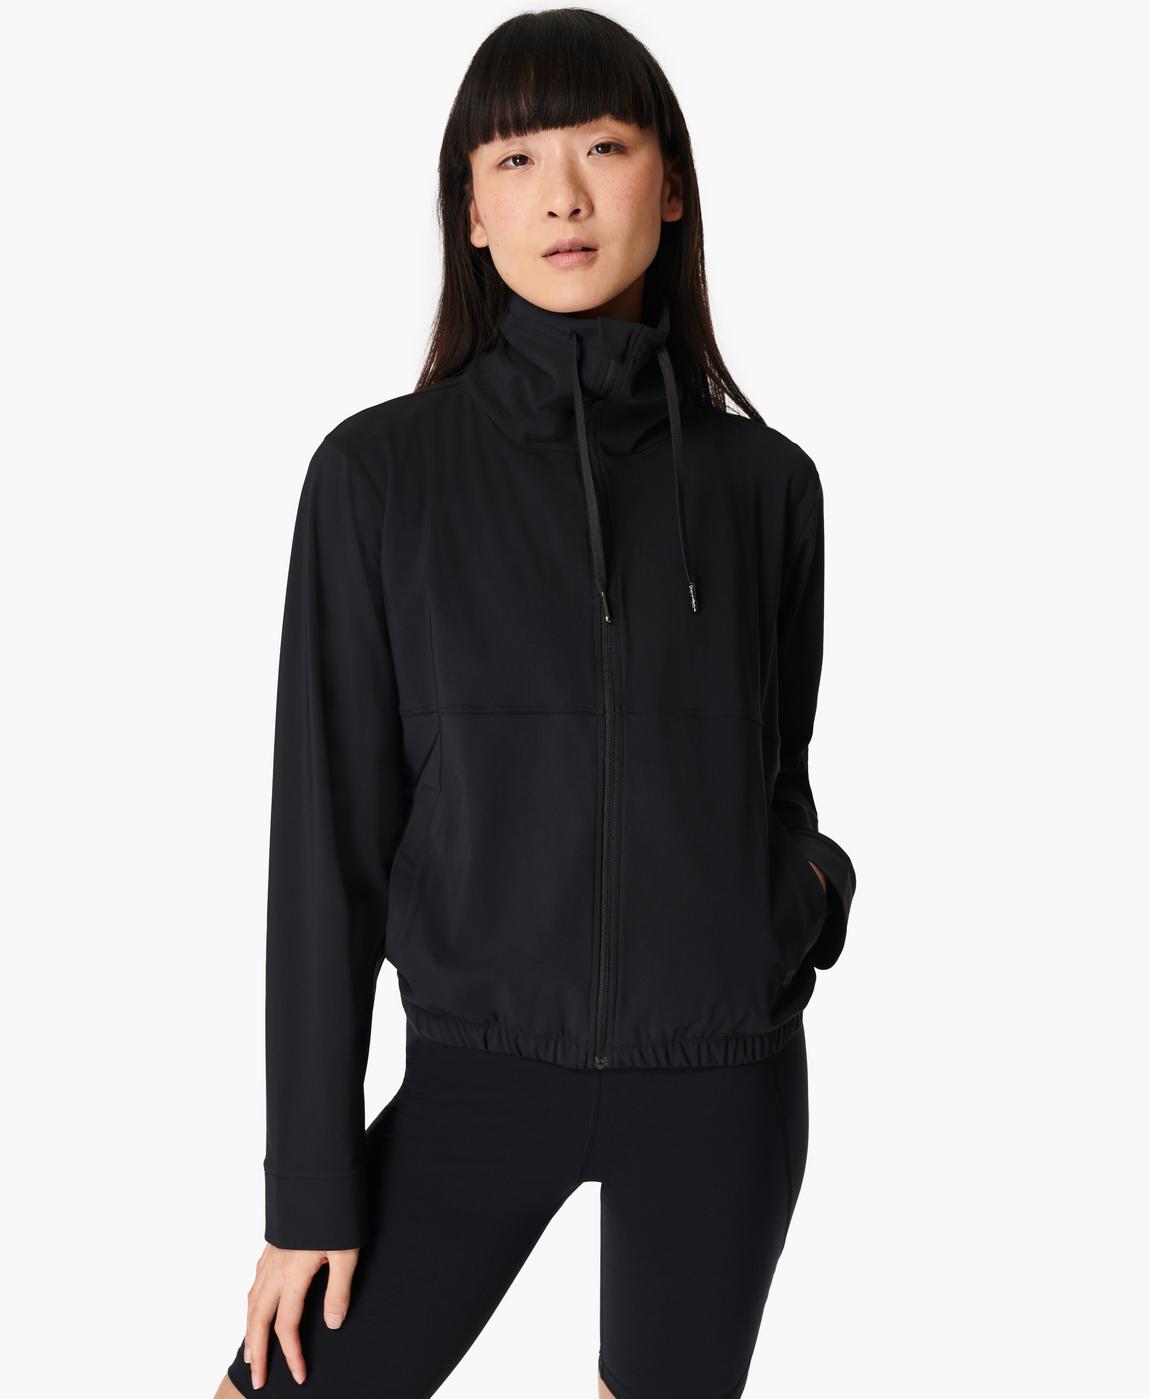 Explorer Zip Up Jacket - Black, Women's Sweaters + Hoodies